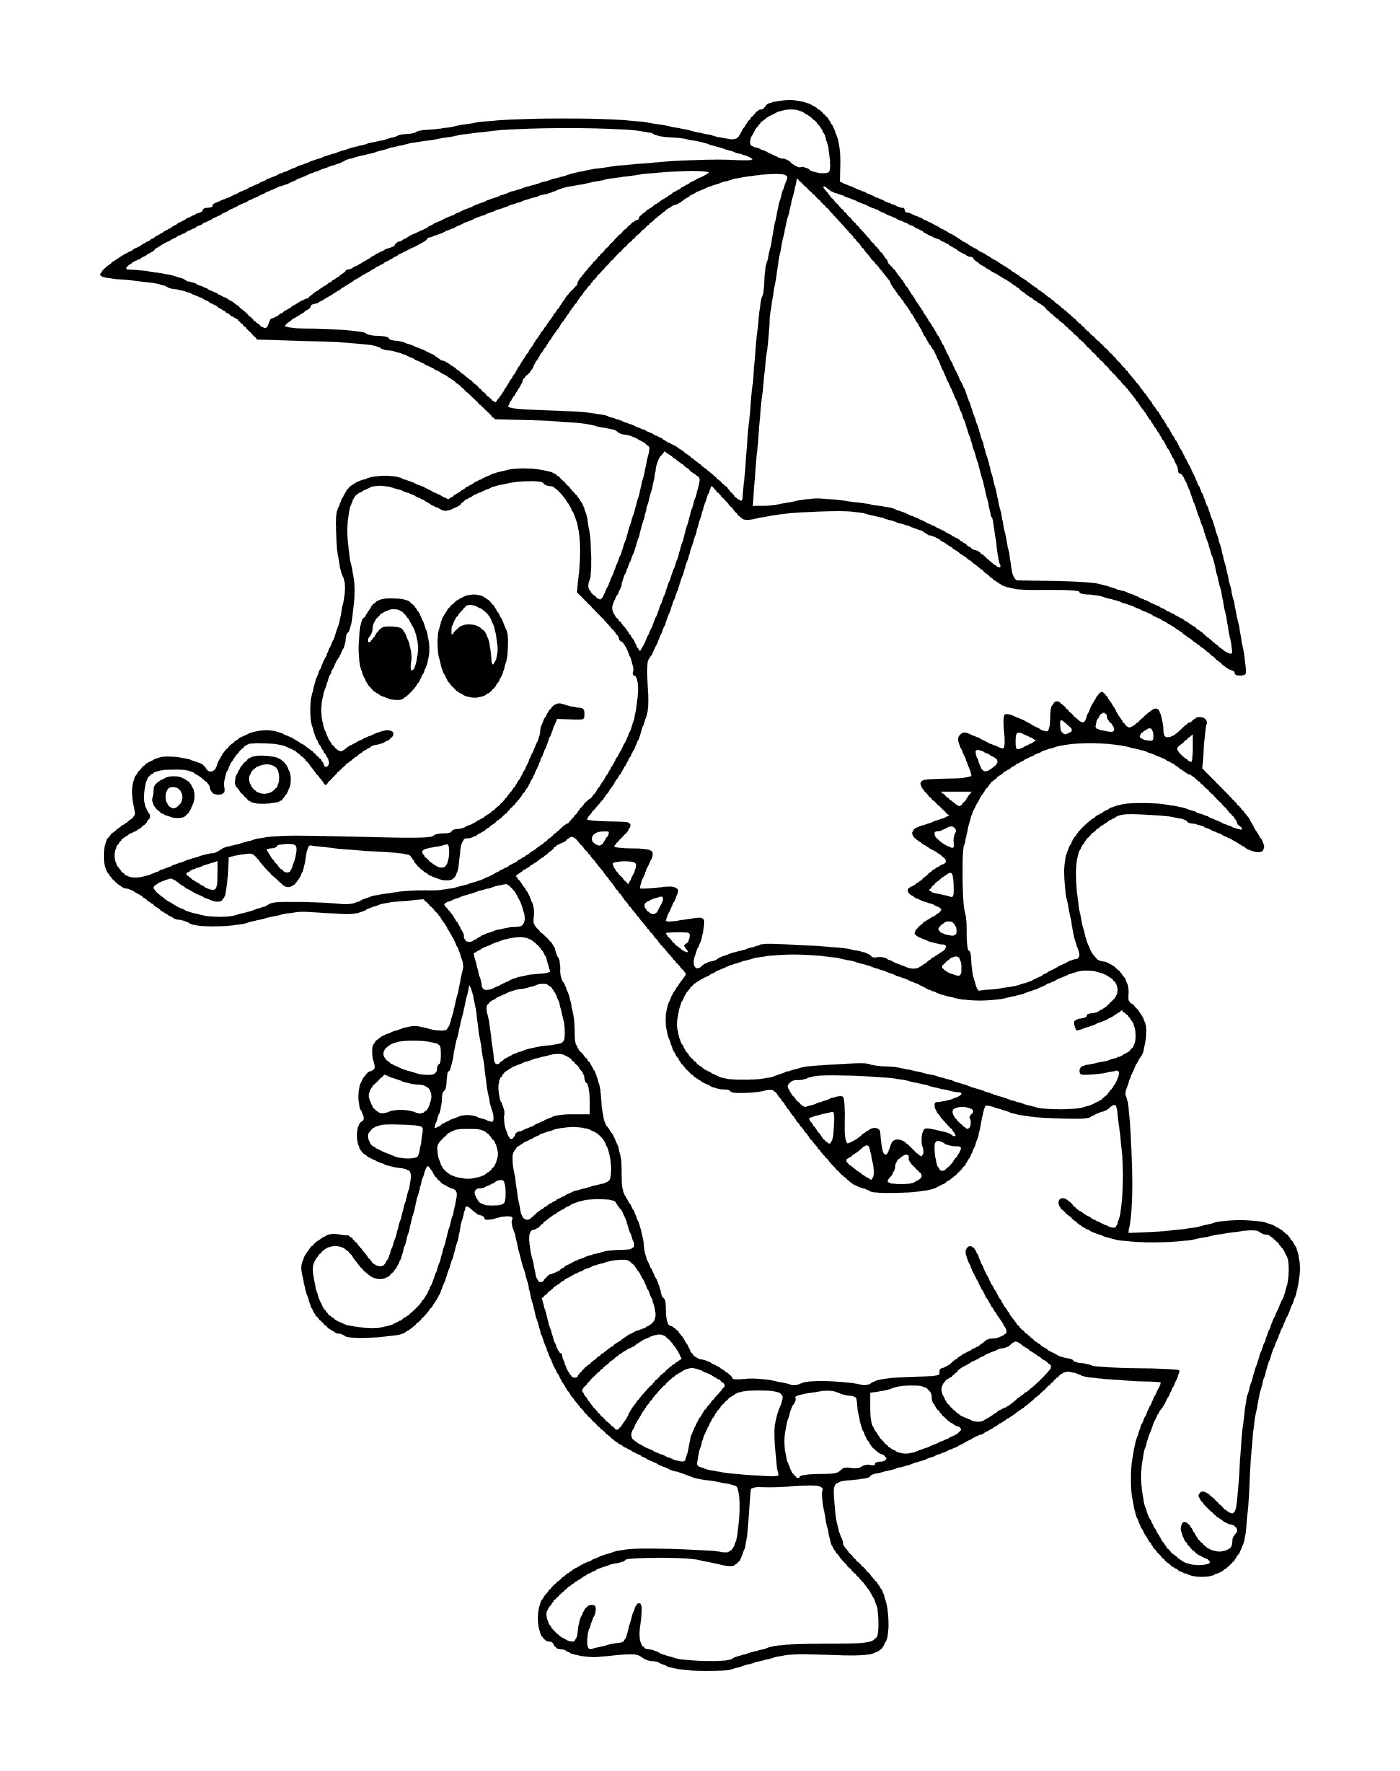  Un cocodrilo sosteniendo un paraguas 